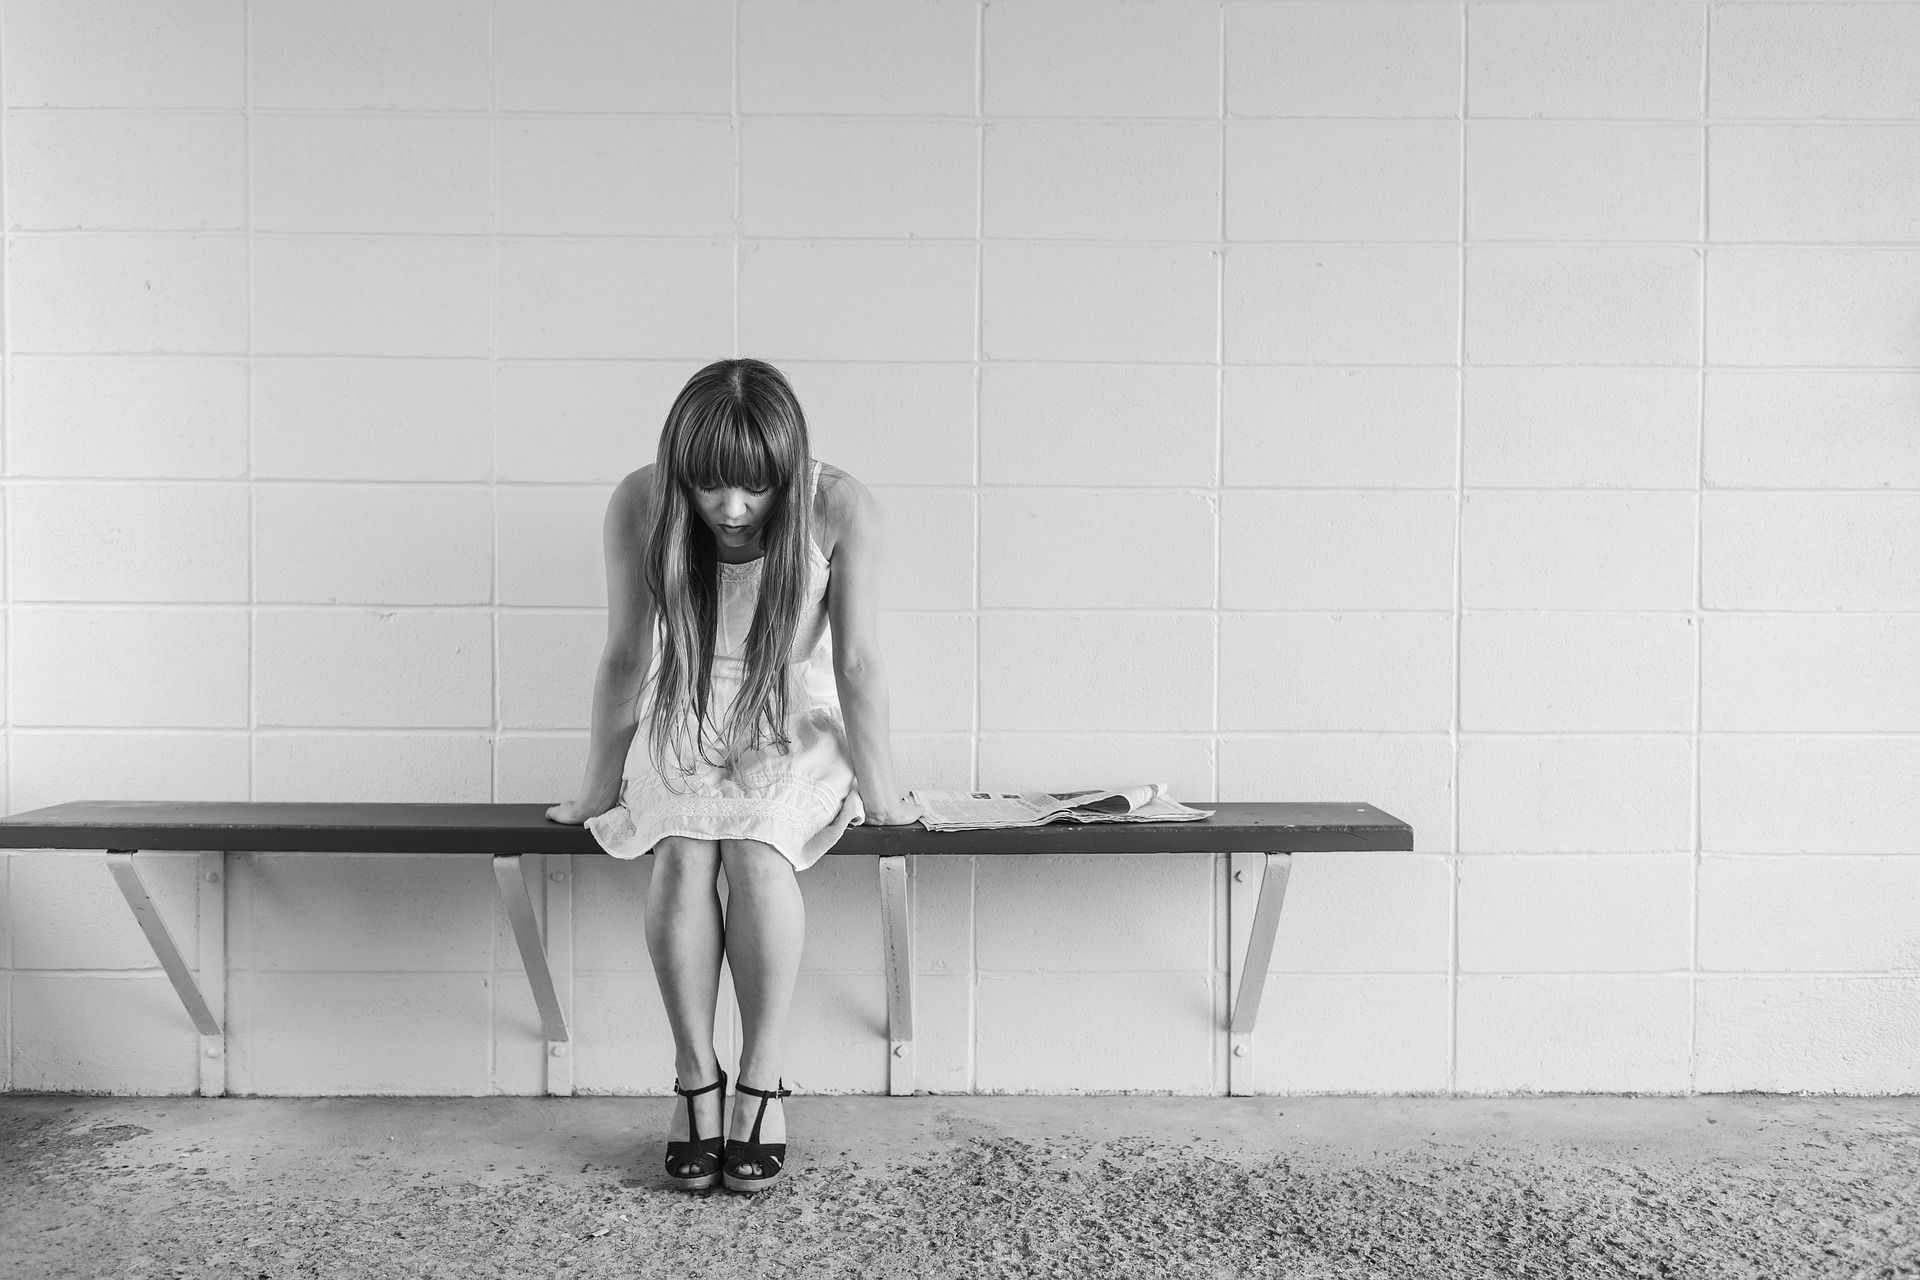 Depressão maior com sintomas psicóticos, um subtipo grave, mas com tratamento